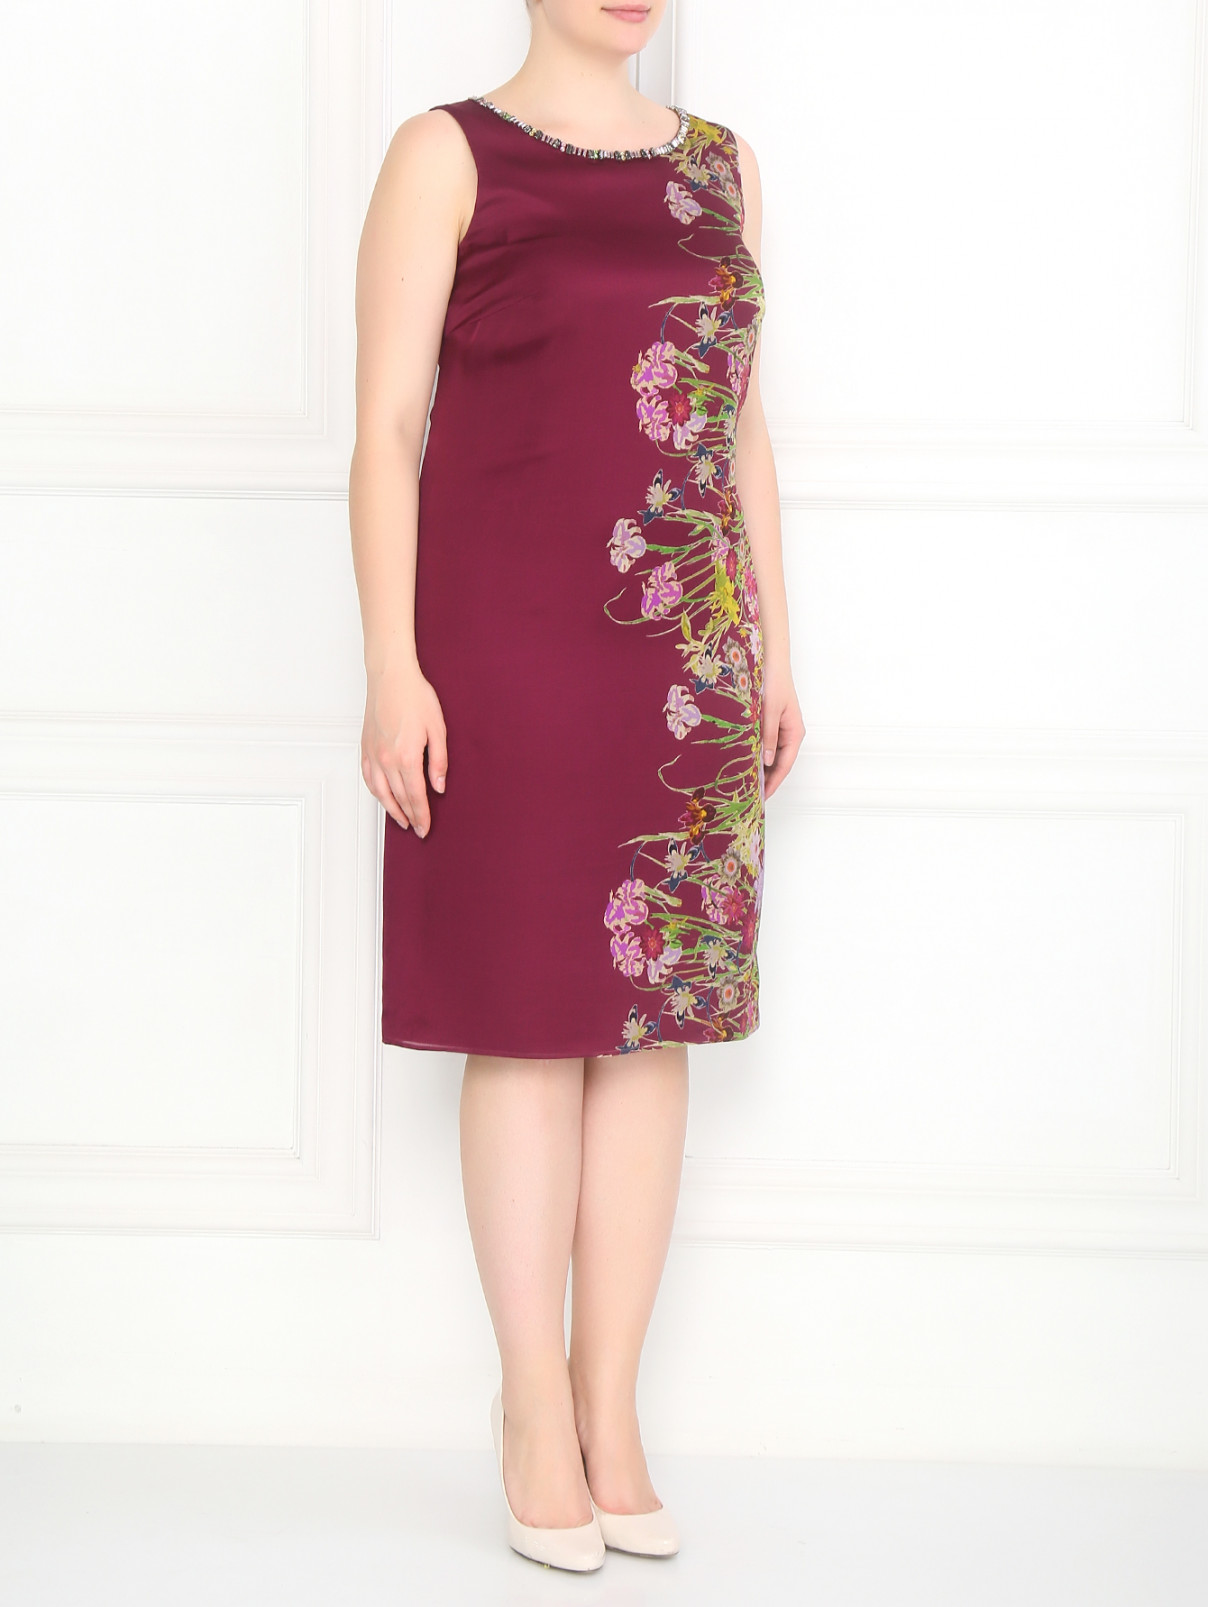 Платье из шелка с аппликацией и узором с рукавами в комплекте Marina Rinaldi  –  Модель Общий вид  – Цвет:  Фиолетовый